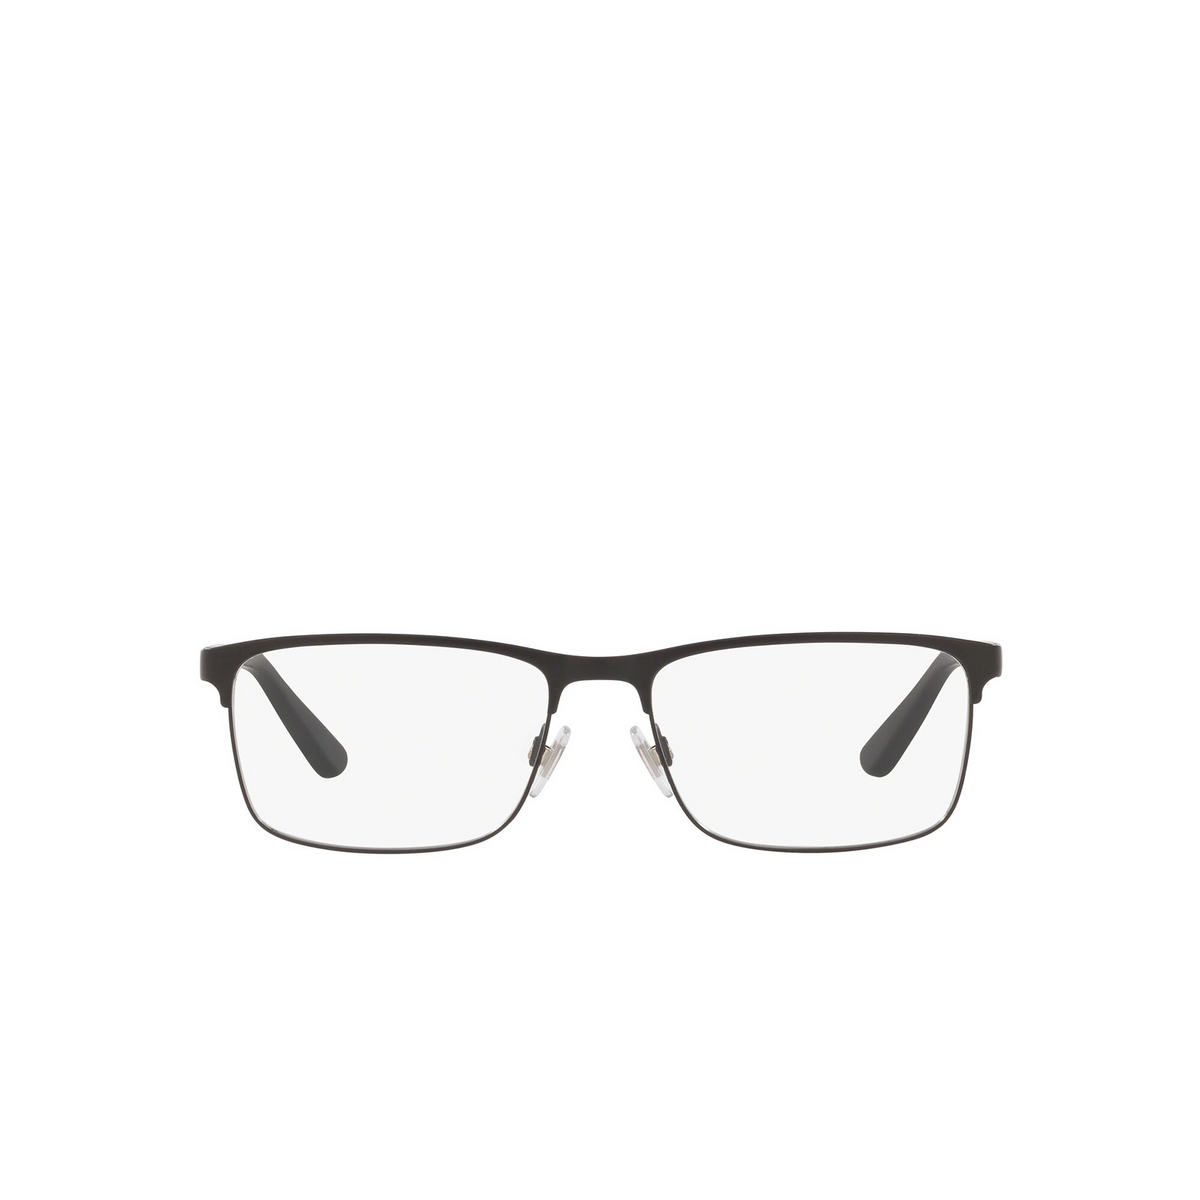 Polo Ralph Lauren® Rectangle Eyeglasses: PH1190 color Matte Black 9038 - front view.